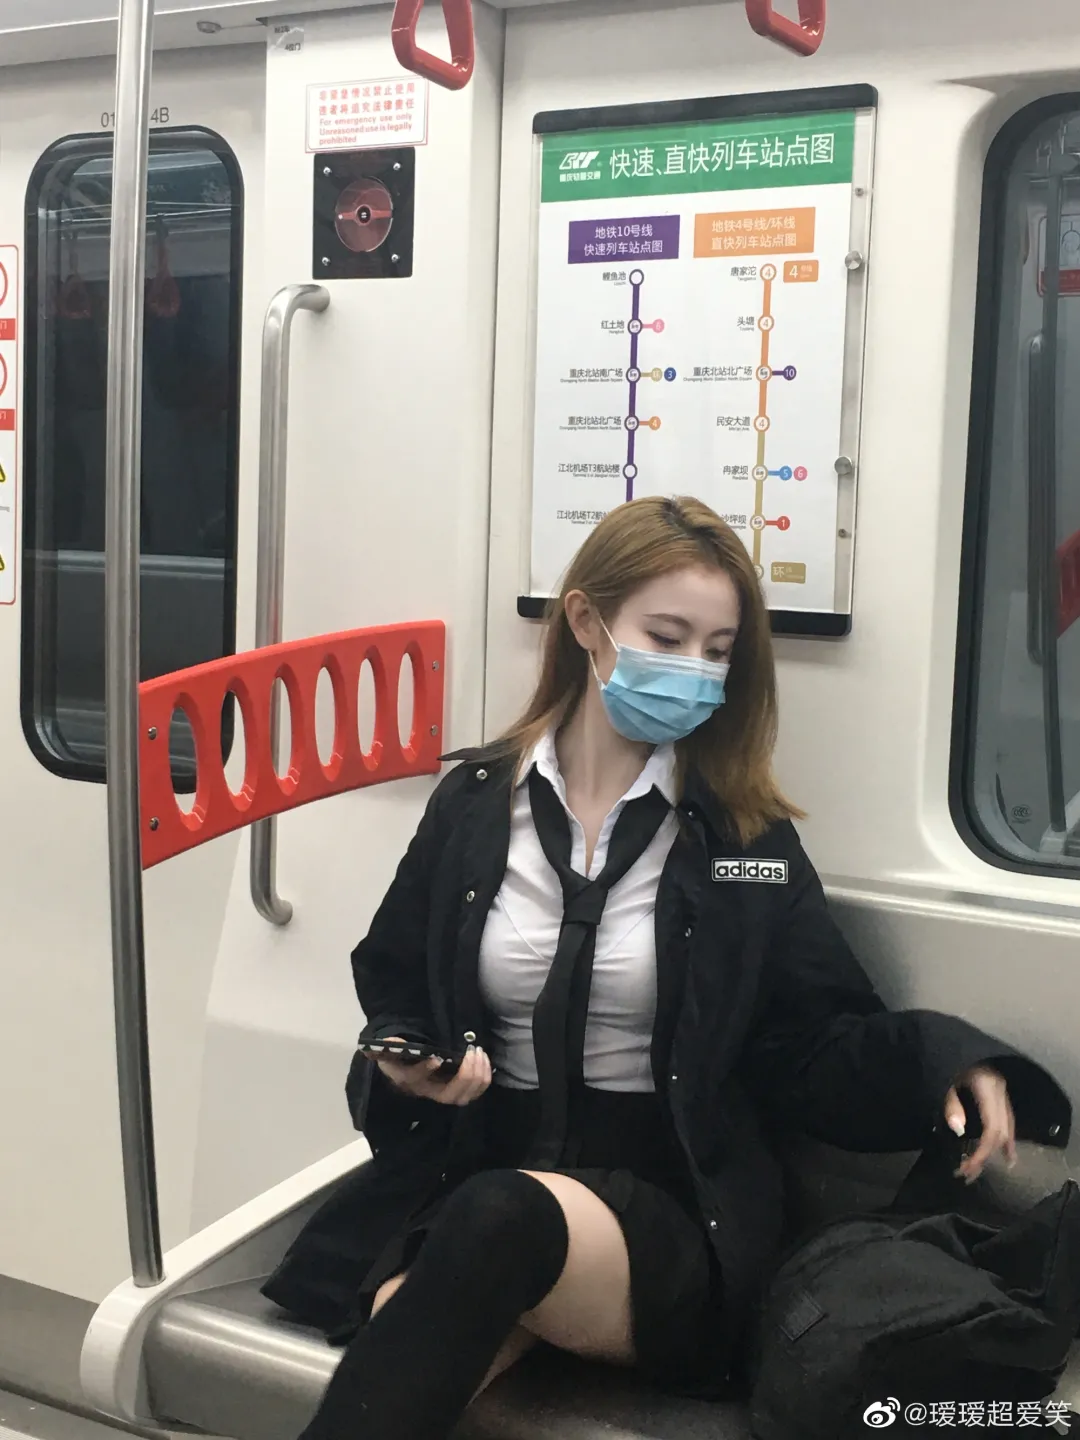 等地铁的美女高清摄影大图-千库网